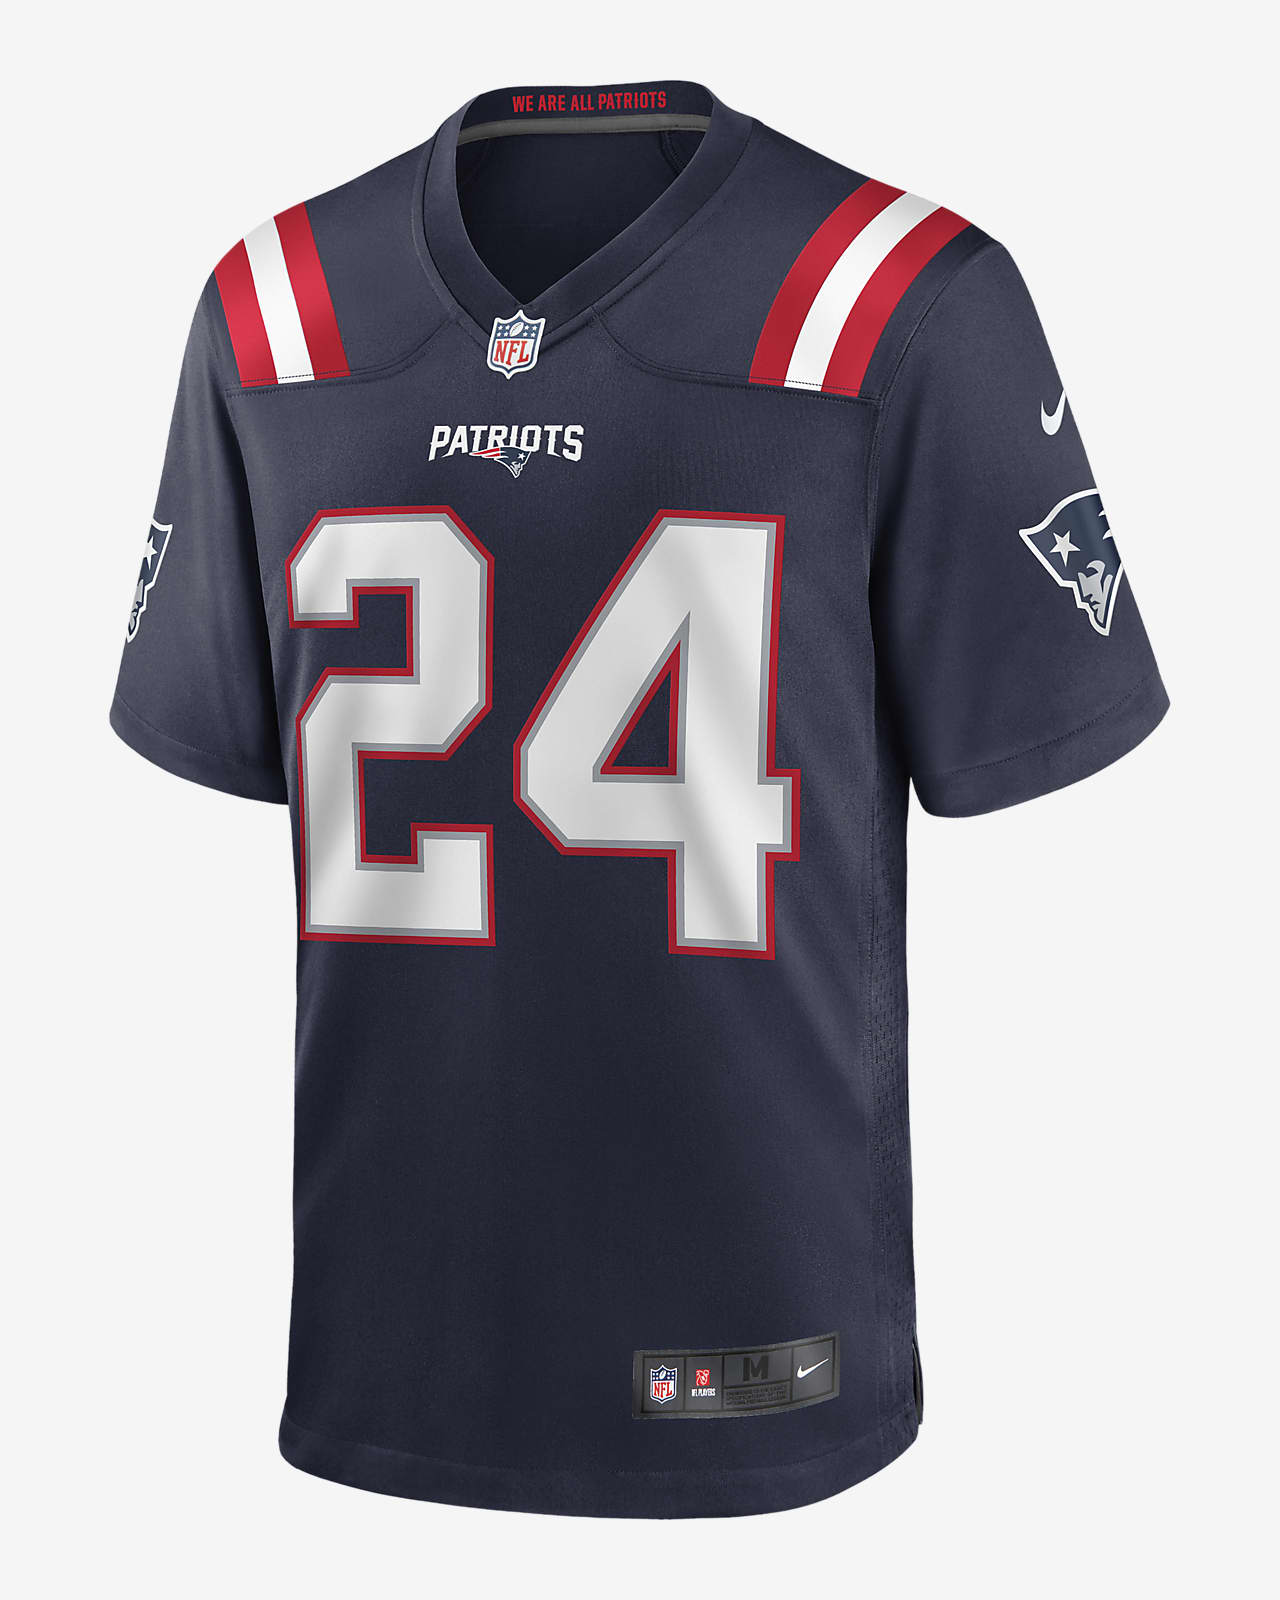 Camiseta de fútbol americano Game para hombre NFL New England Patriots  (Stephon Gilmore). Nike.com